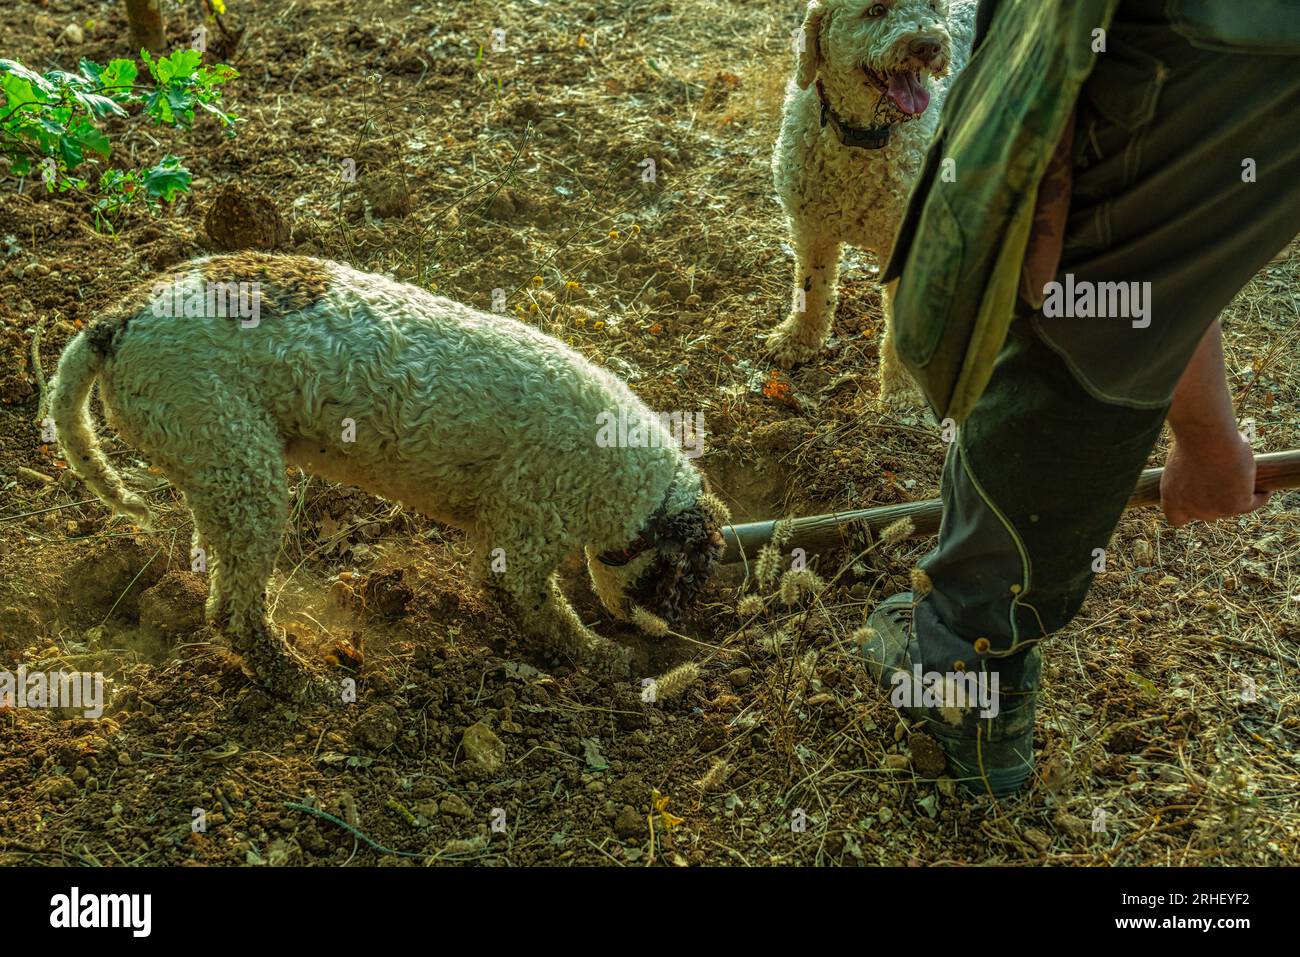 Cani da tartufo immagini e fotografie stock ad alta risoluzione - Alamy